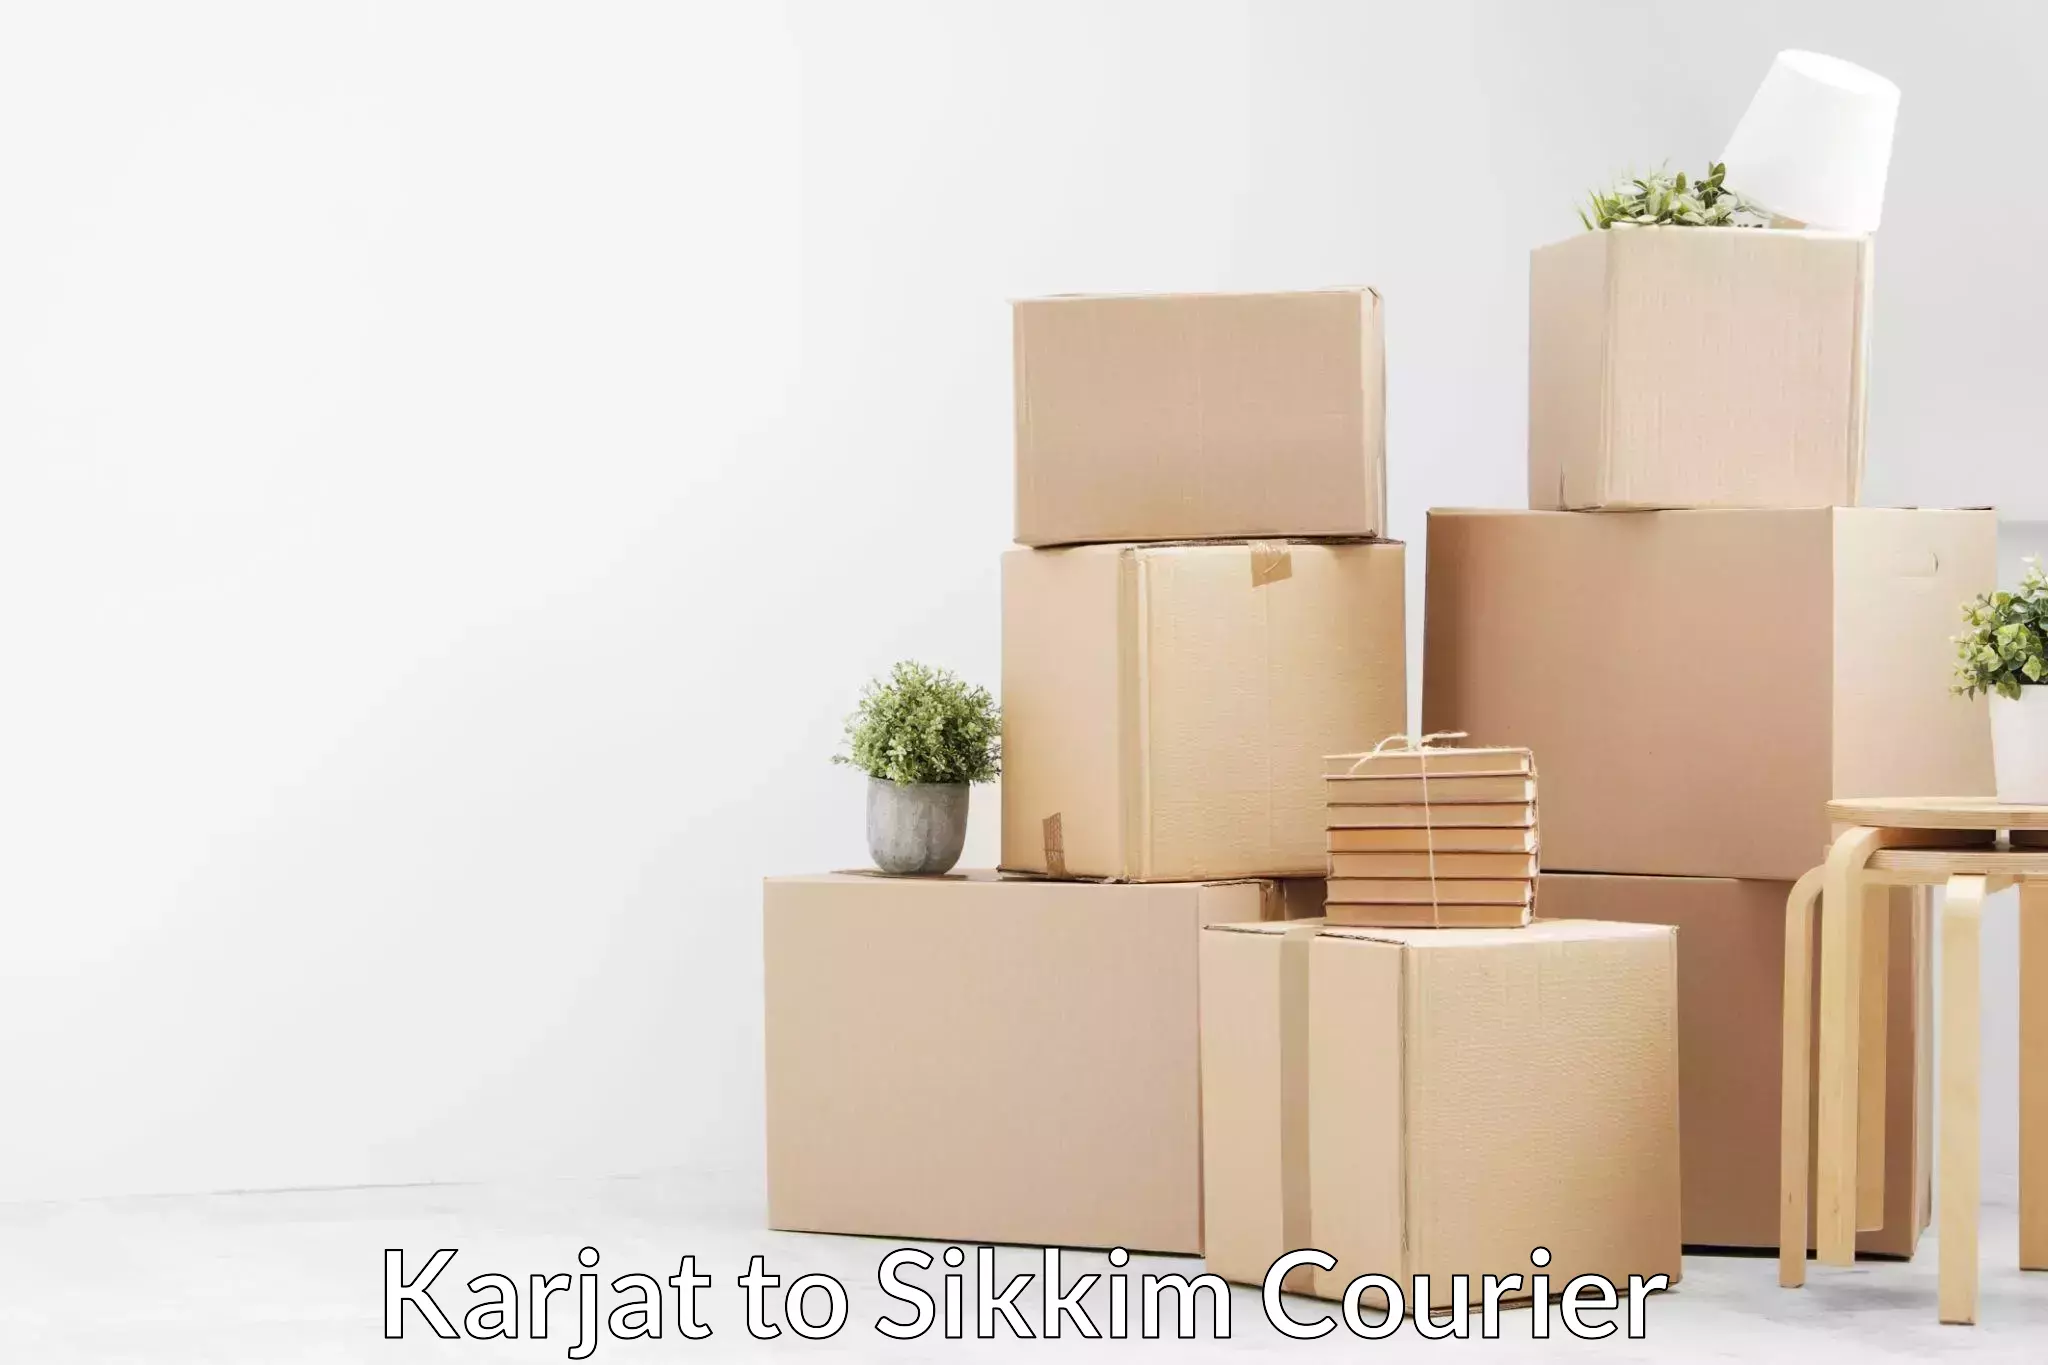 Furniture transport company Karjat to Mangan